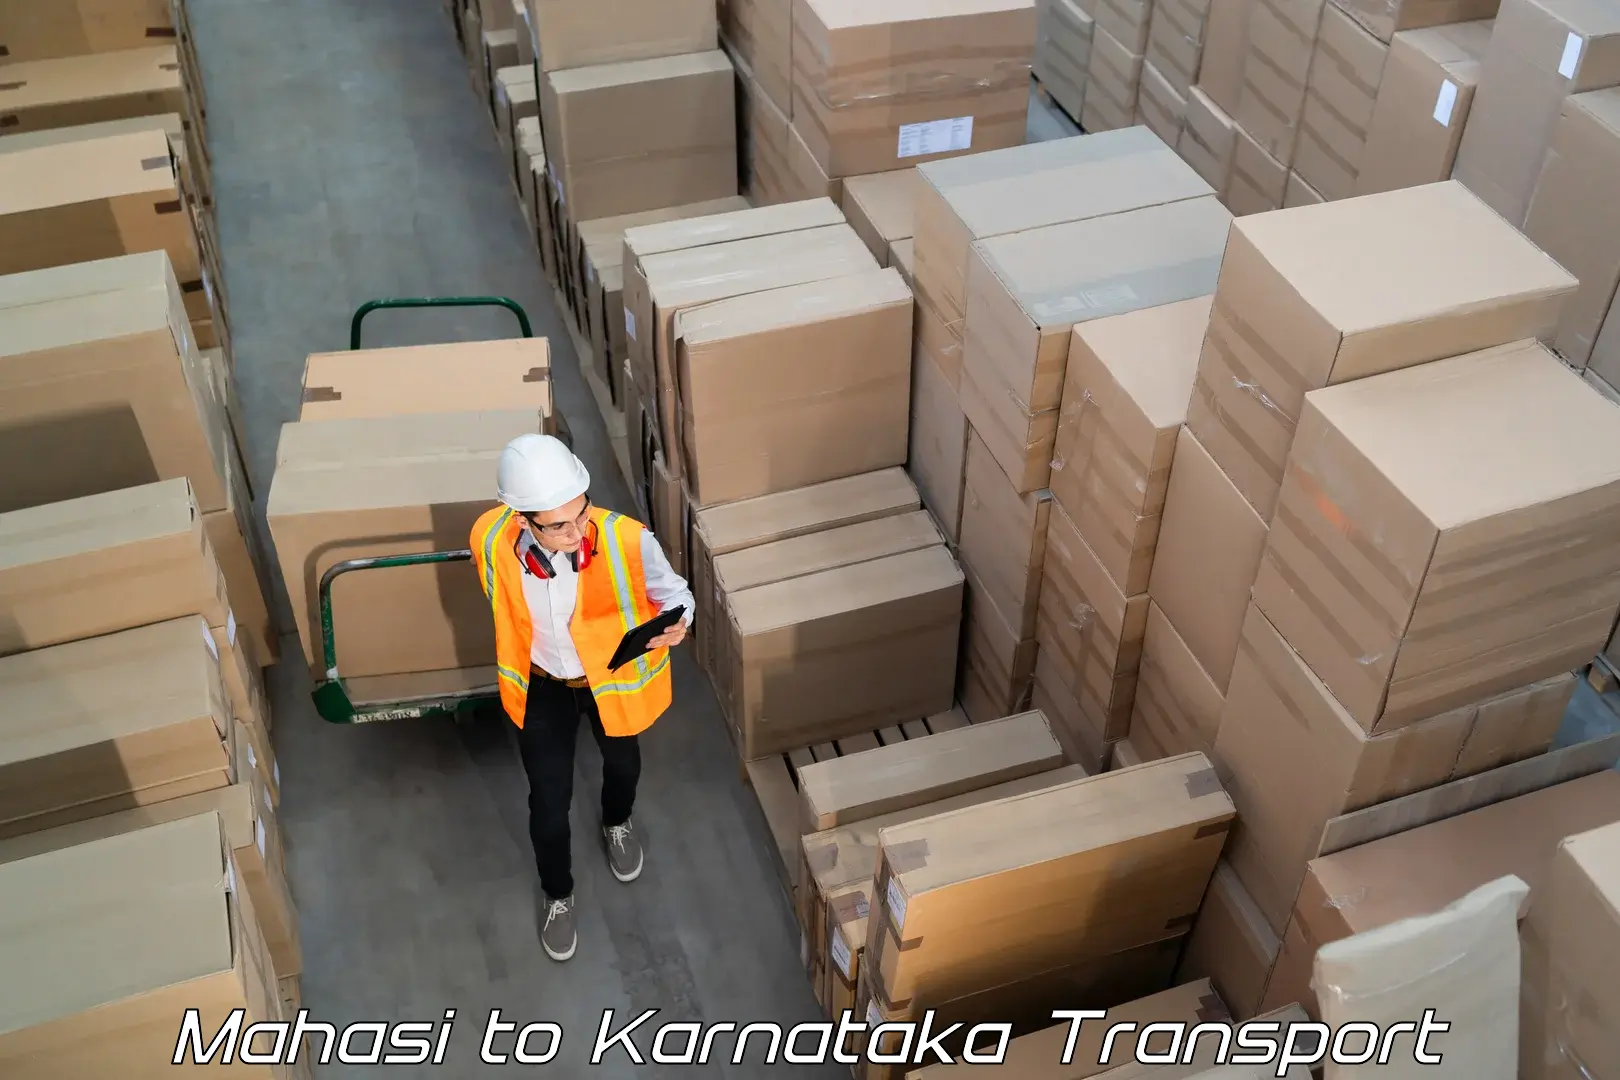 India truck logistics services Mahasi to Jalahalli